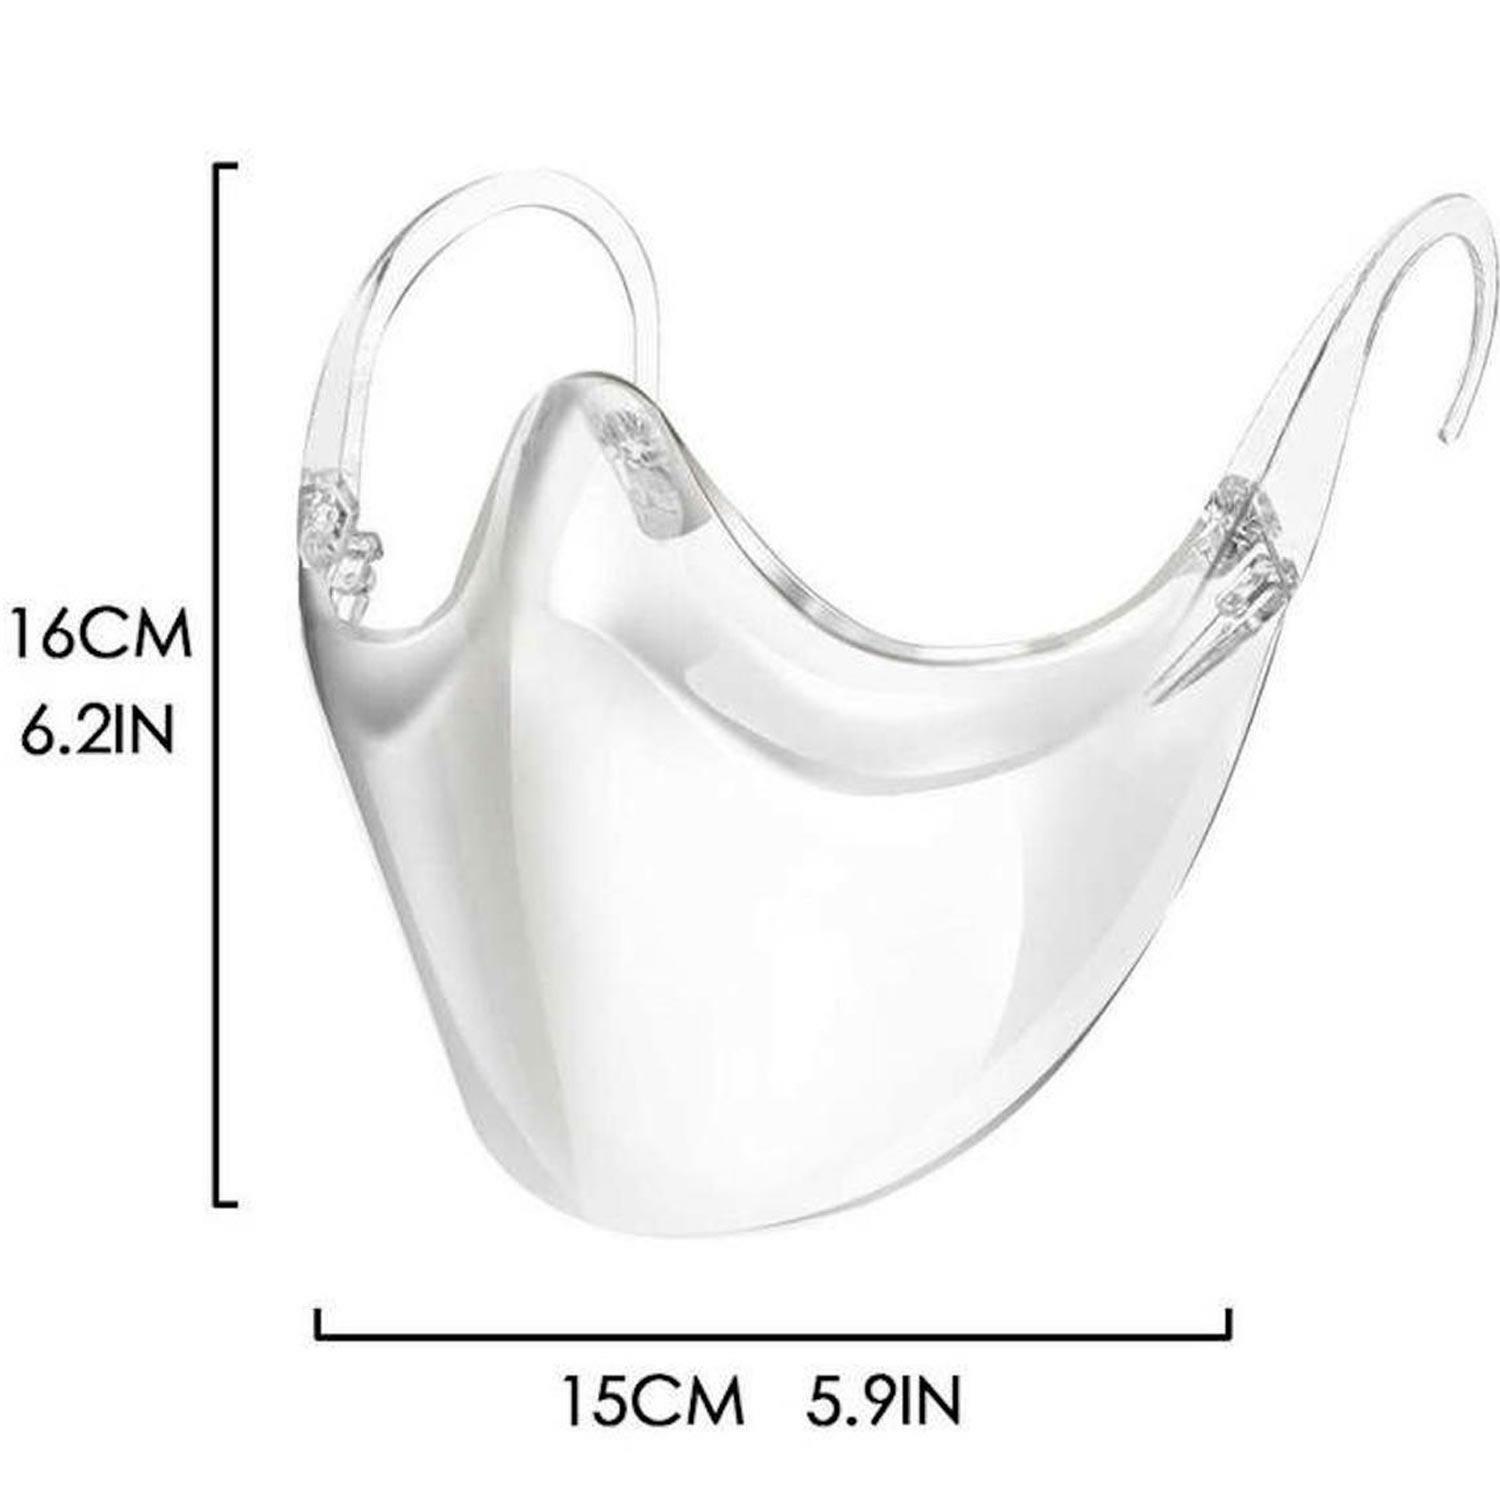 Transparente Mund-Nasen-Bedeckung MNS - mehrfach verwendbar